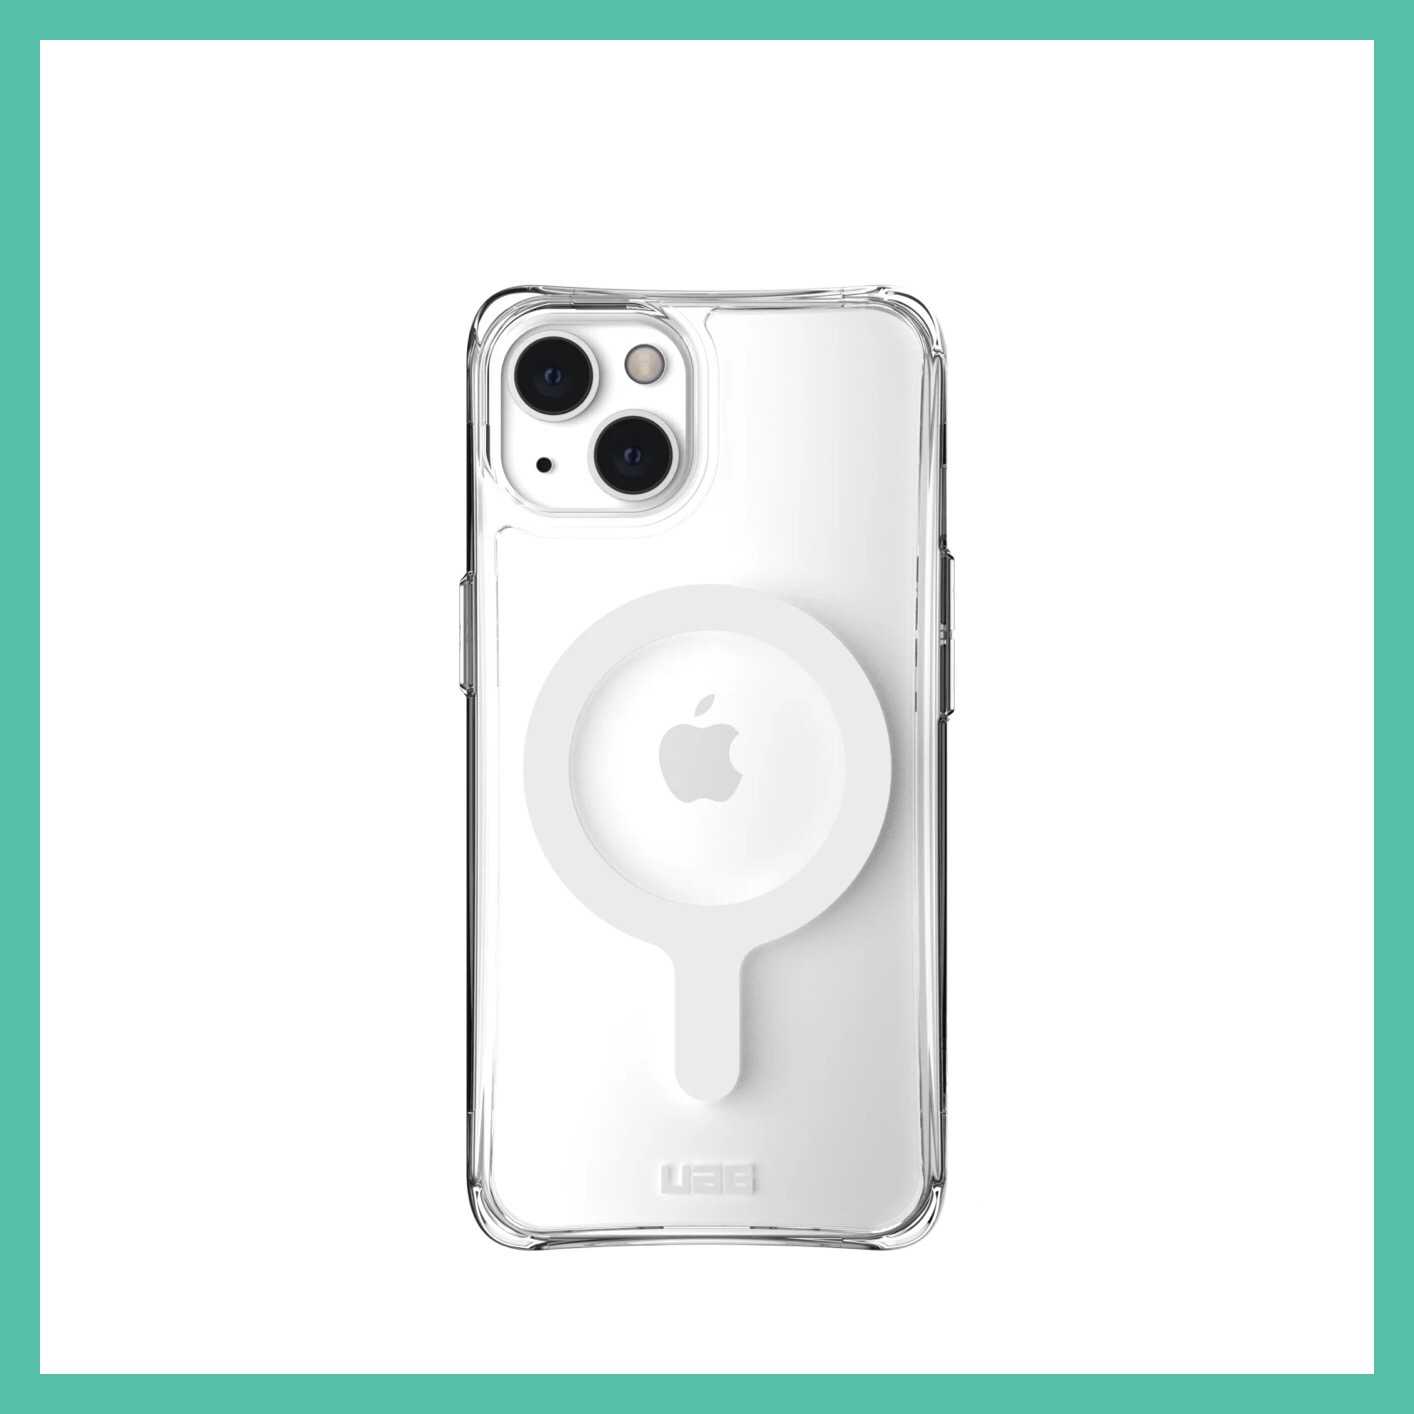 強強滾-【預購】美國軍規 UAG iPhone13 "6.1" (2021) MagSafe 耐衝擊保護殼 (2色)